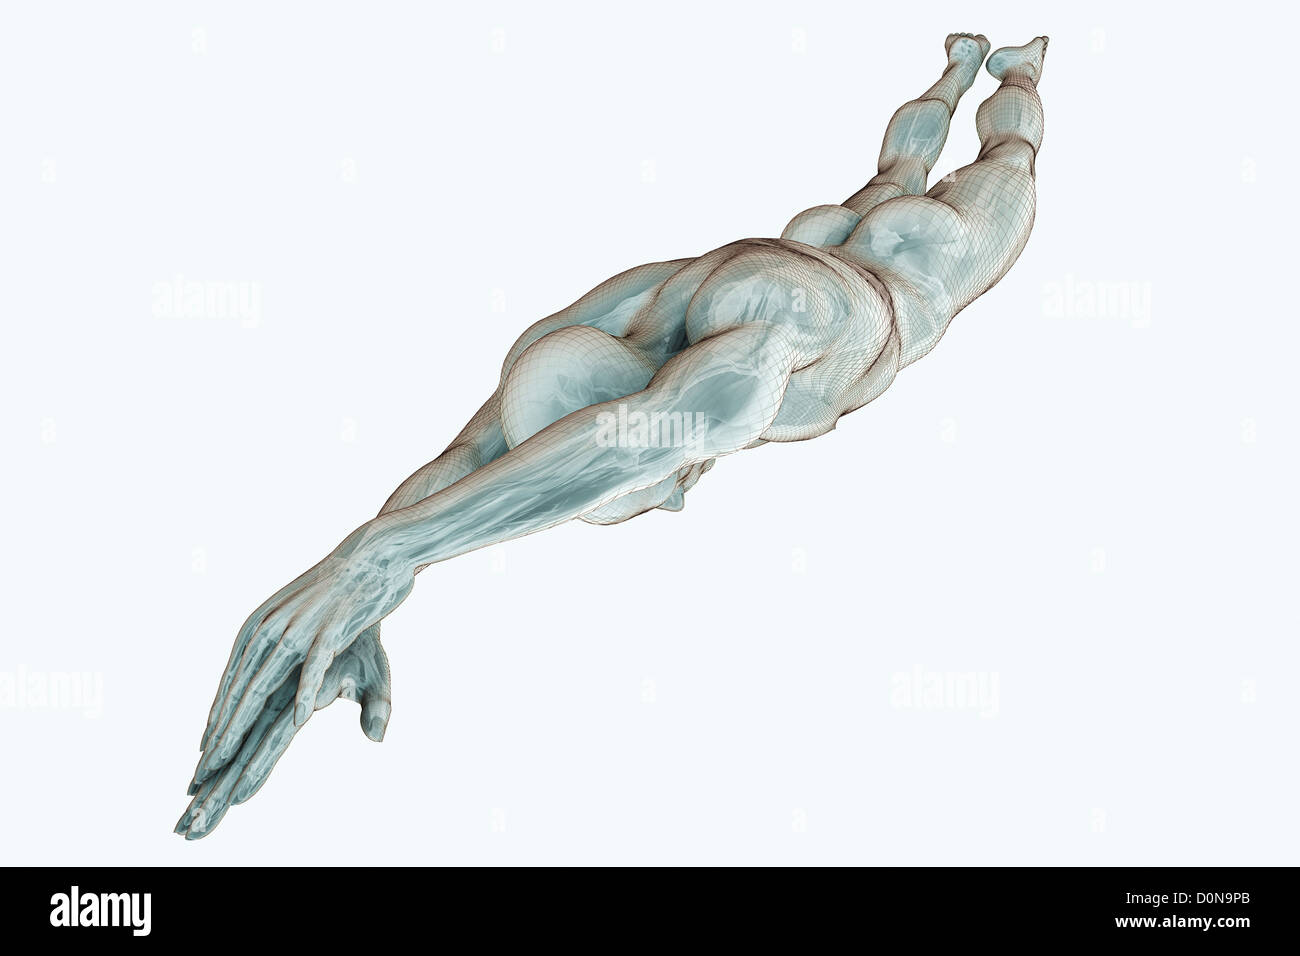 Figura maschile immersioni con gli organi interni visibili. Foto Stock